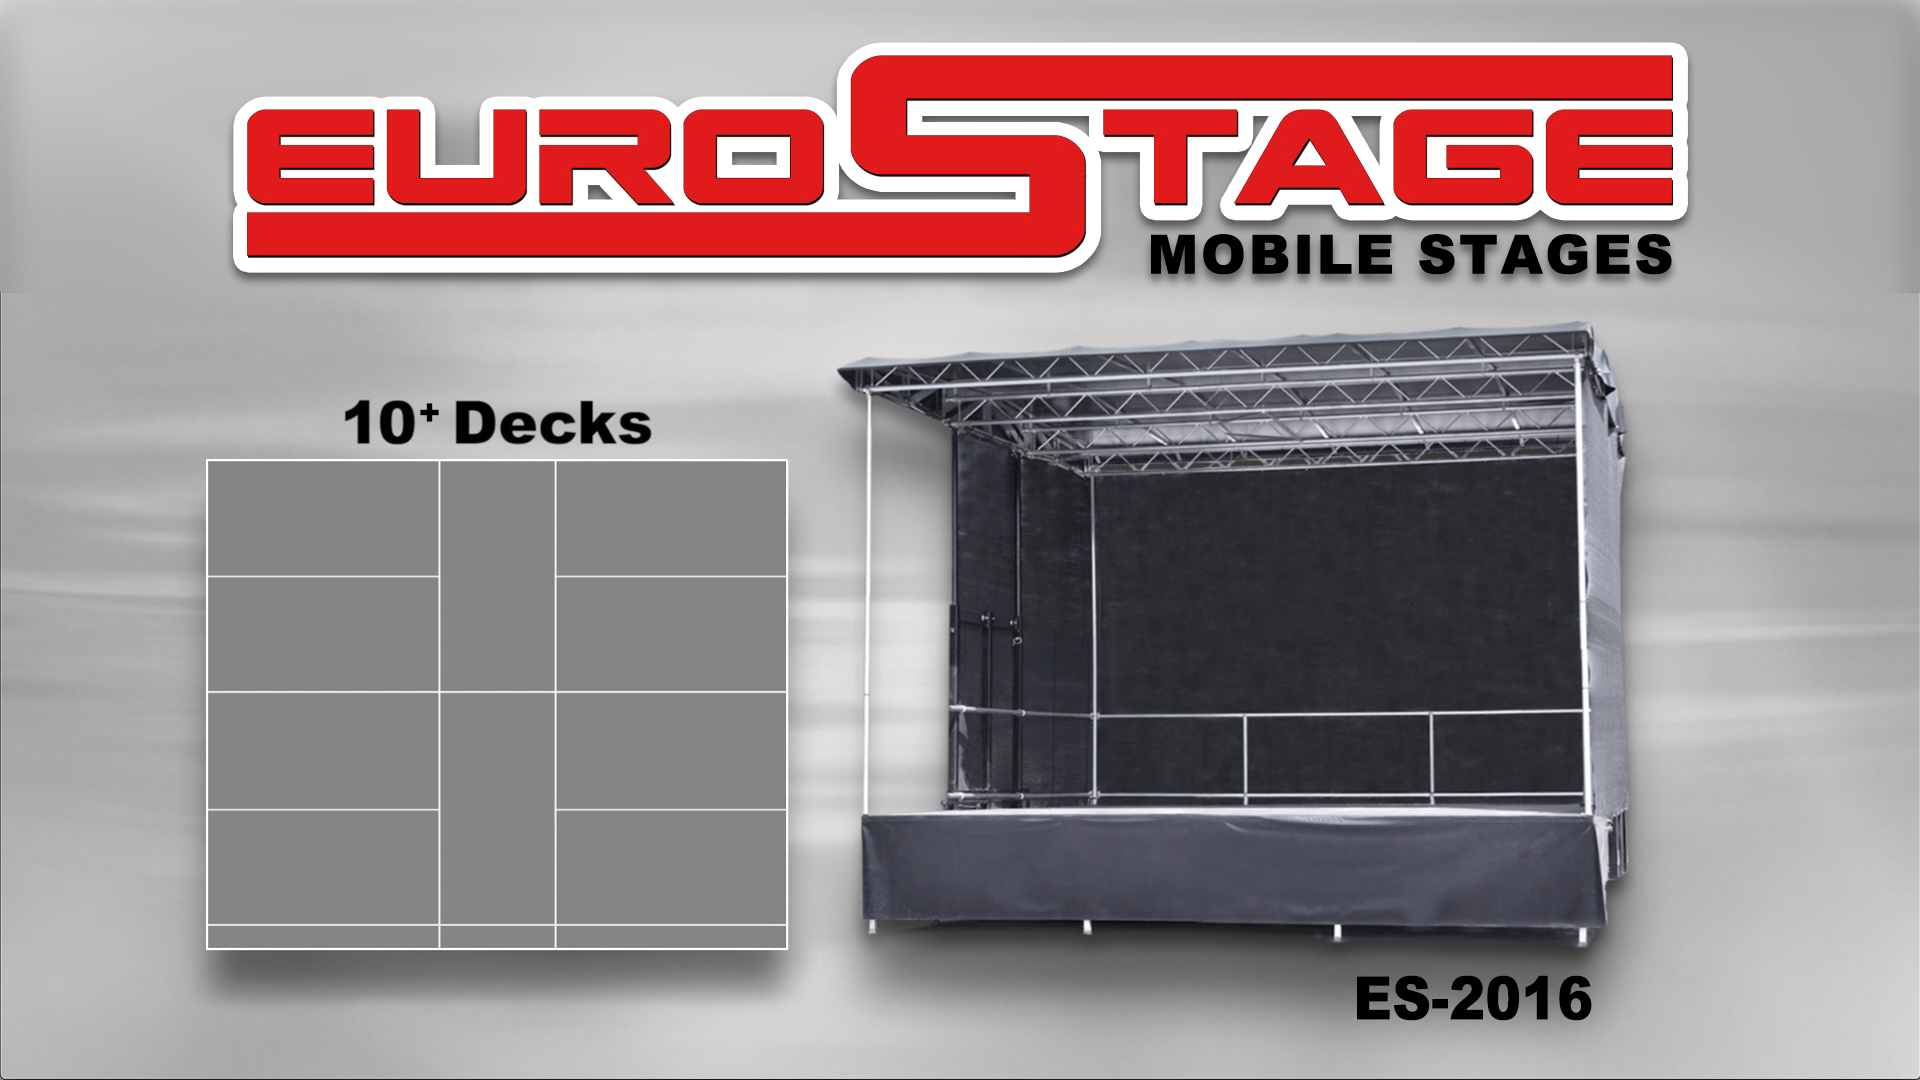 EuroStage ES-2016 Mobile Stage